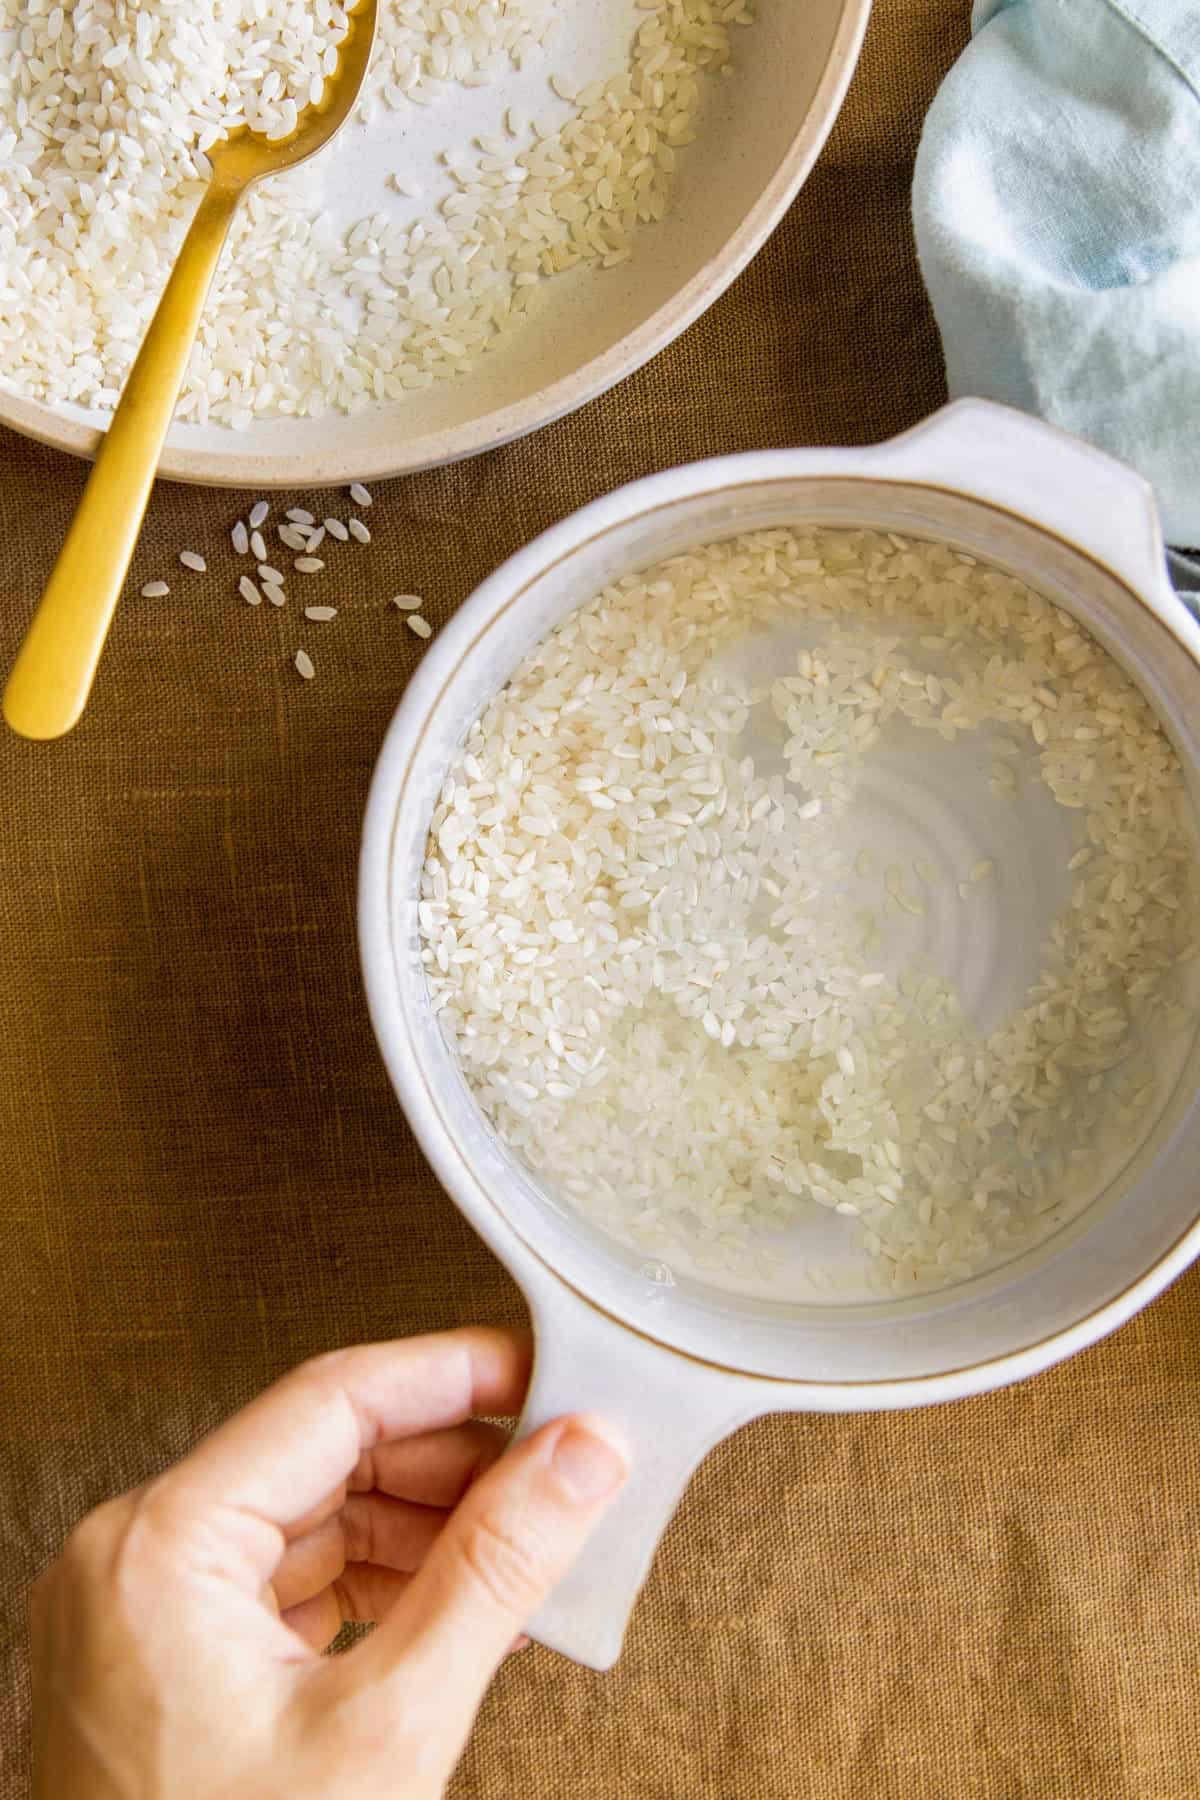 Soaking rice in water for DIY rice water toner